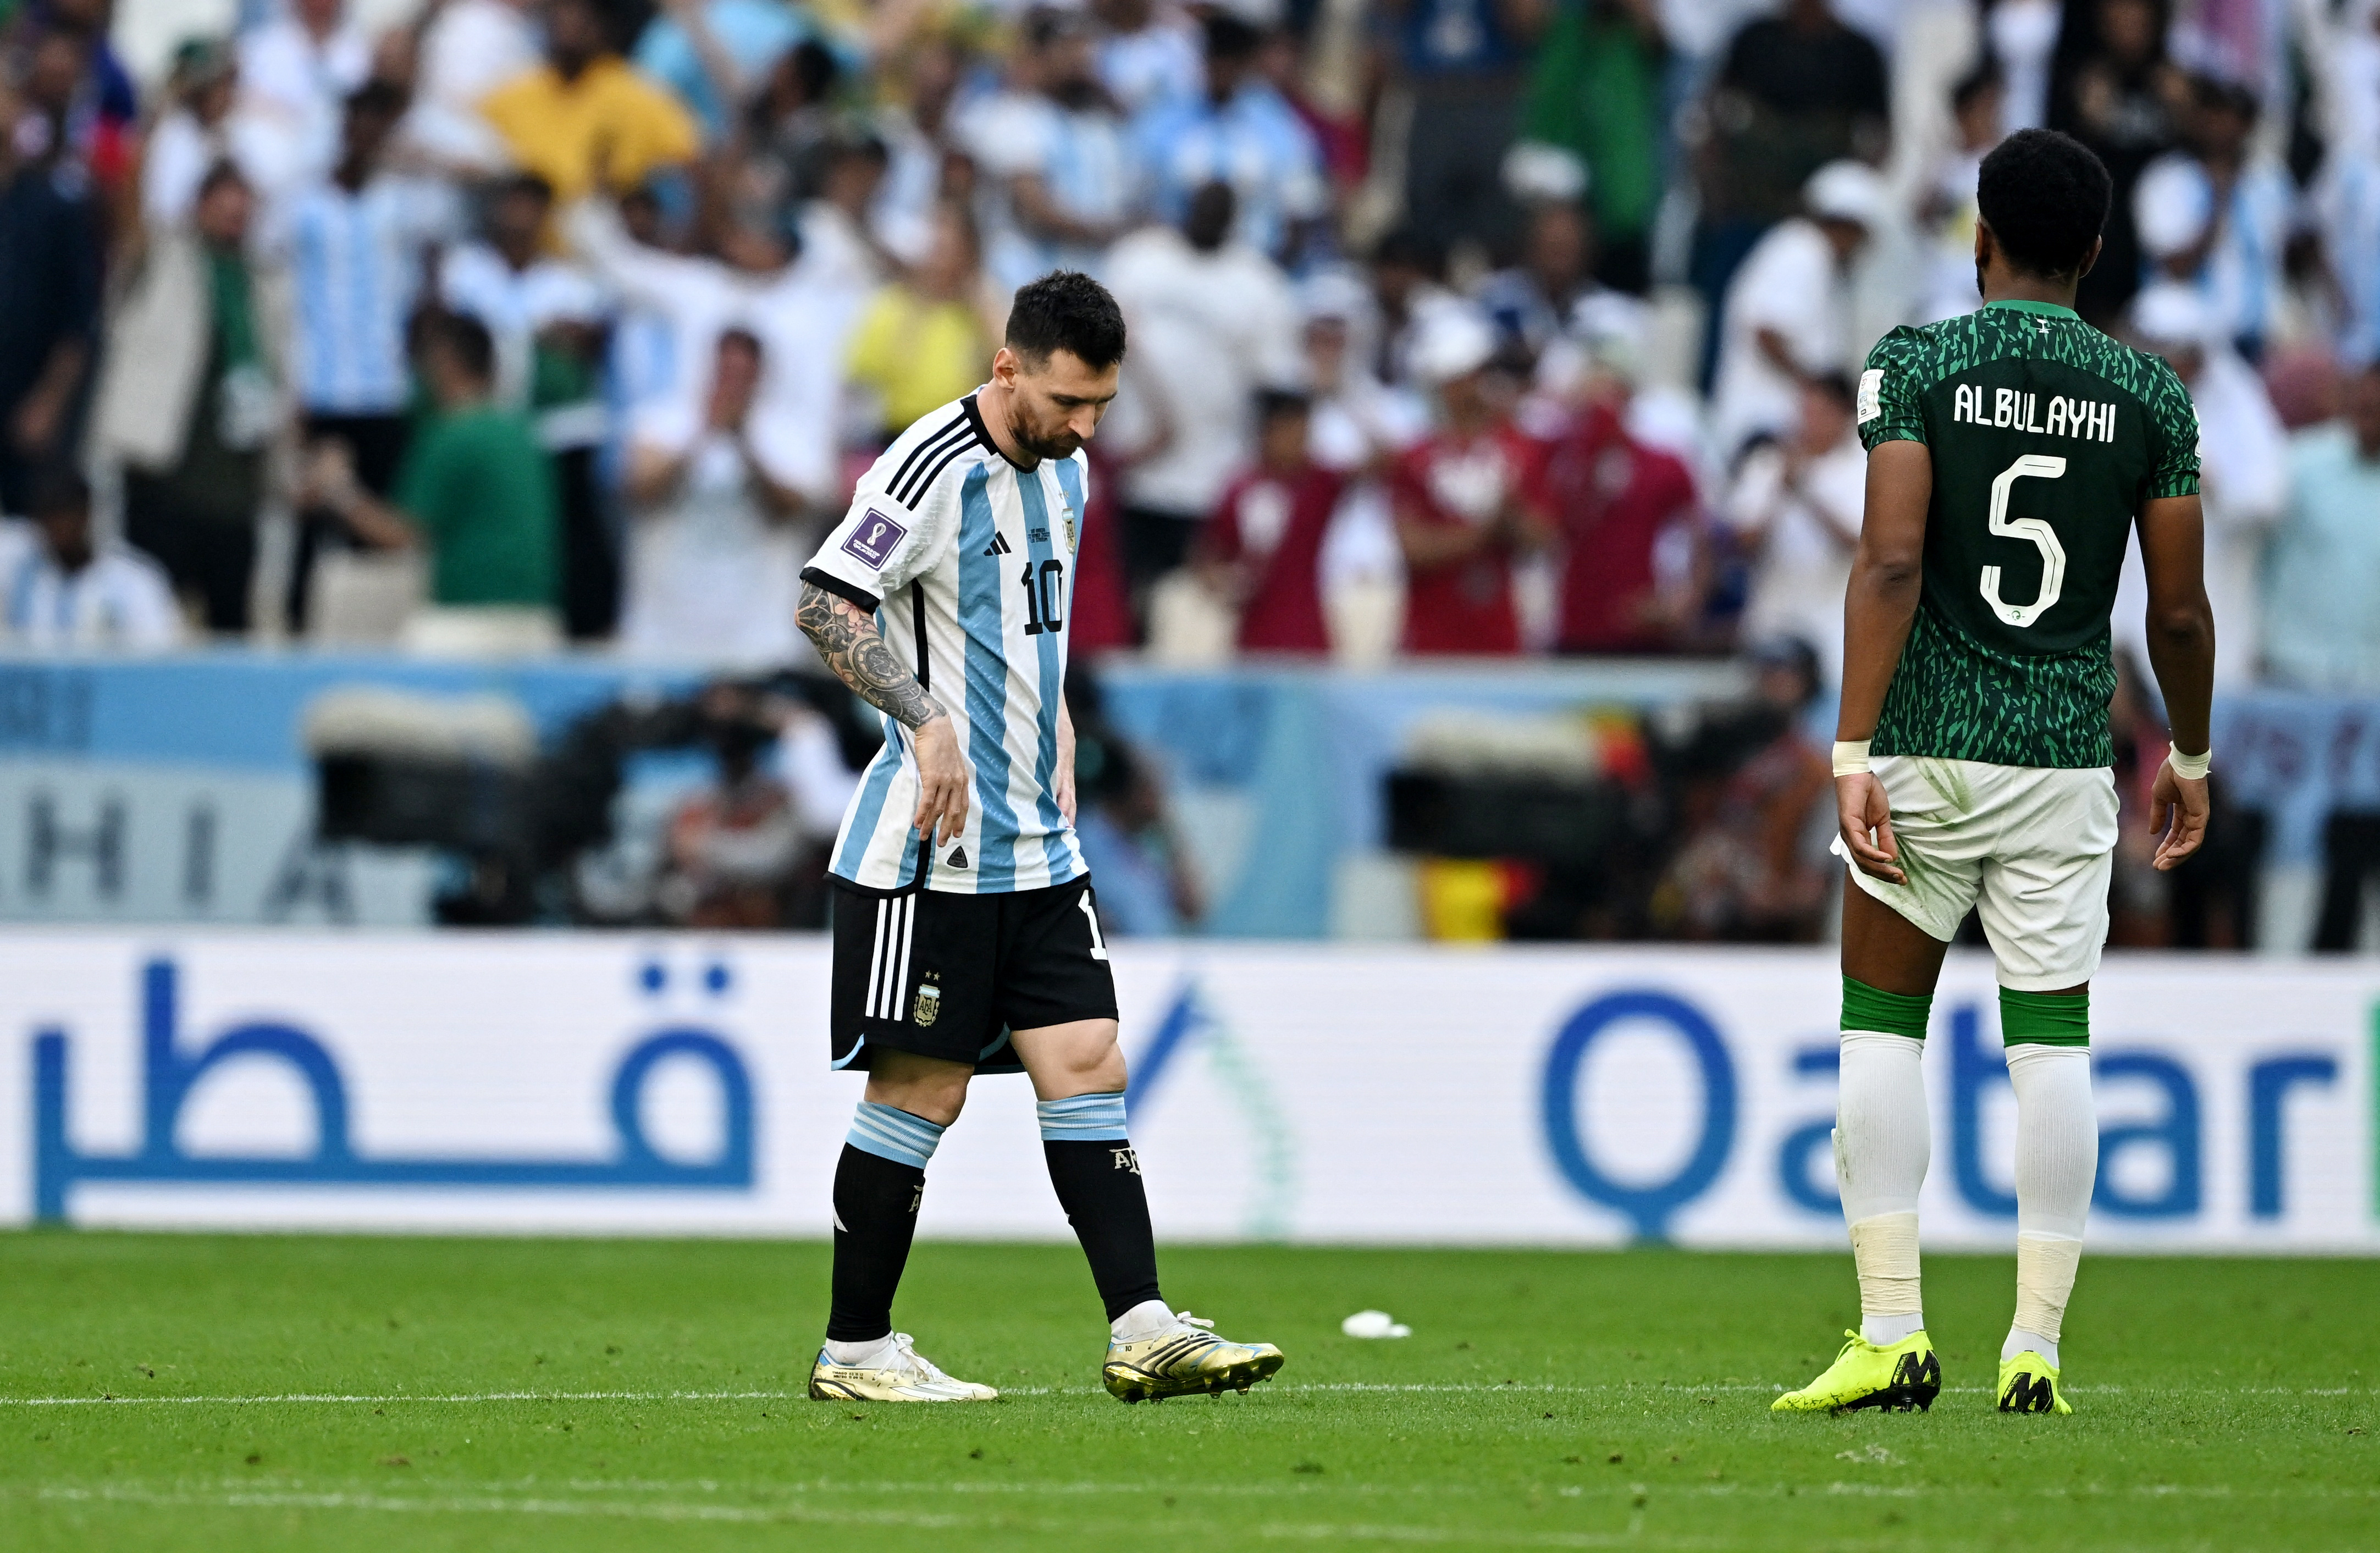 El cruce del defensor saudí con el capitán argentino se produjo durante los festejos del segundo gol de los Halcones Verdes (REUTERS/Dylan Martinez)